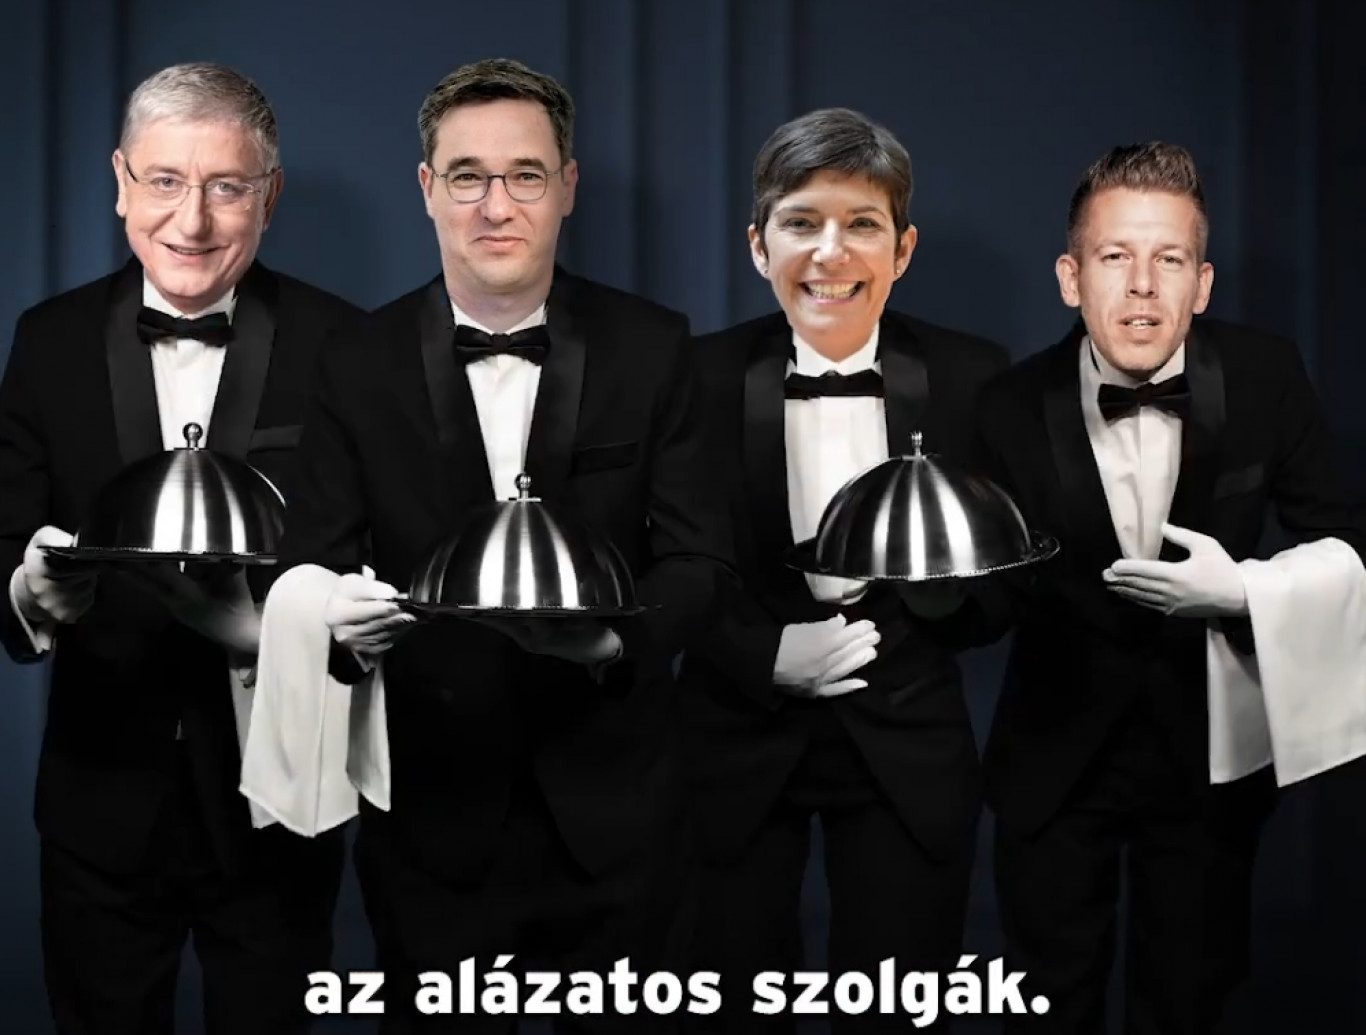 Hát ezeknek meg ki csengetett? Művészi kisfilmben rántja le a leplet a Fidesz újfent a dollárbaloldalról